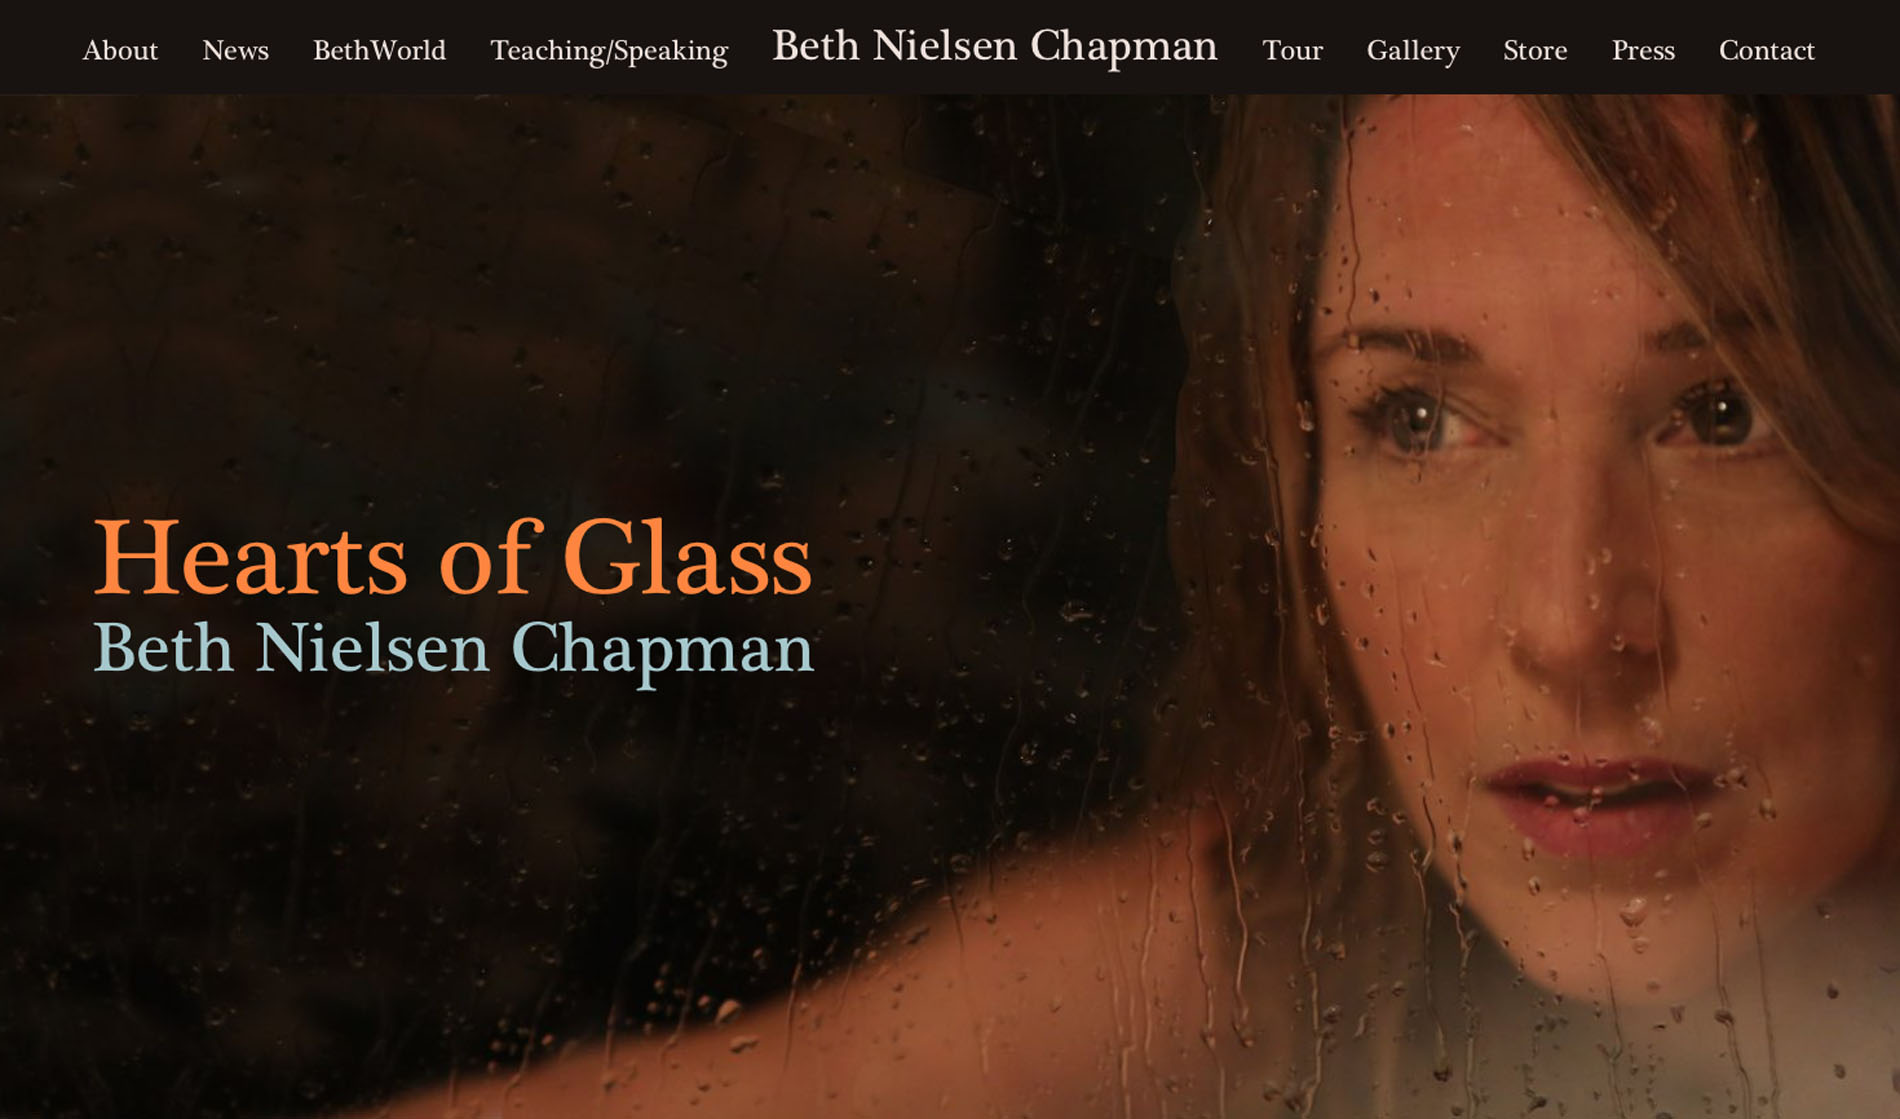 Beth Nielsen Chapman Image